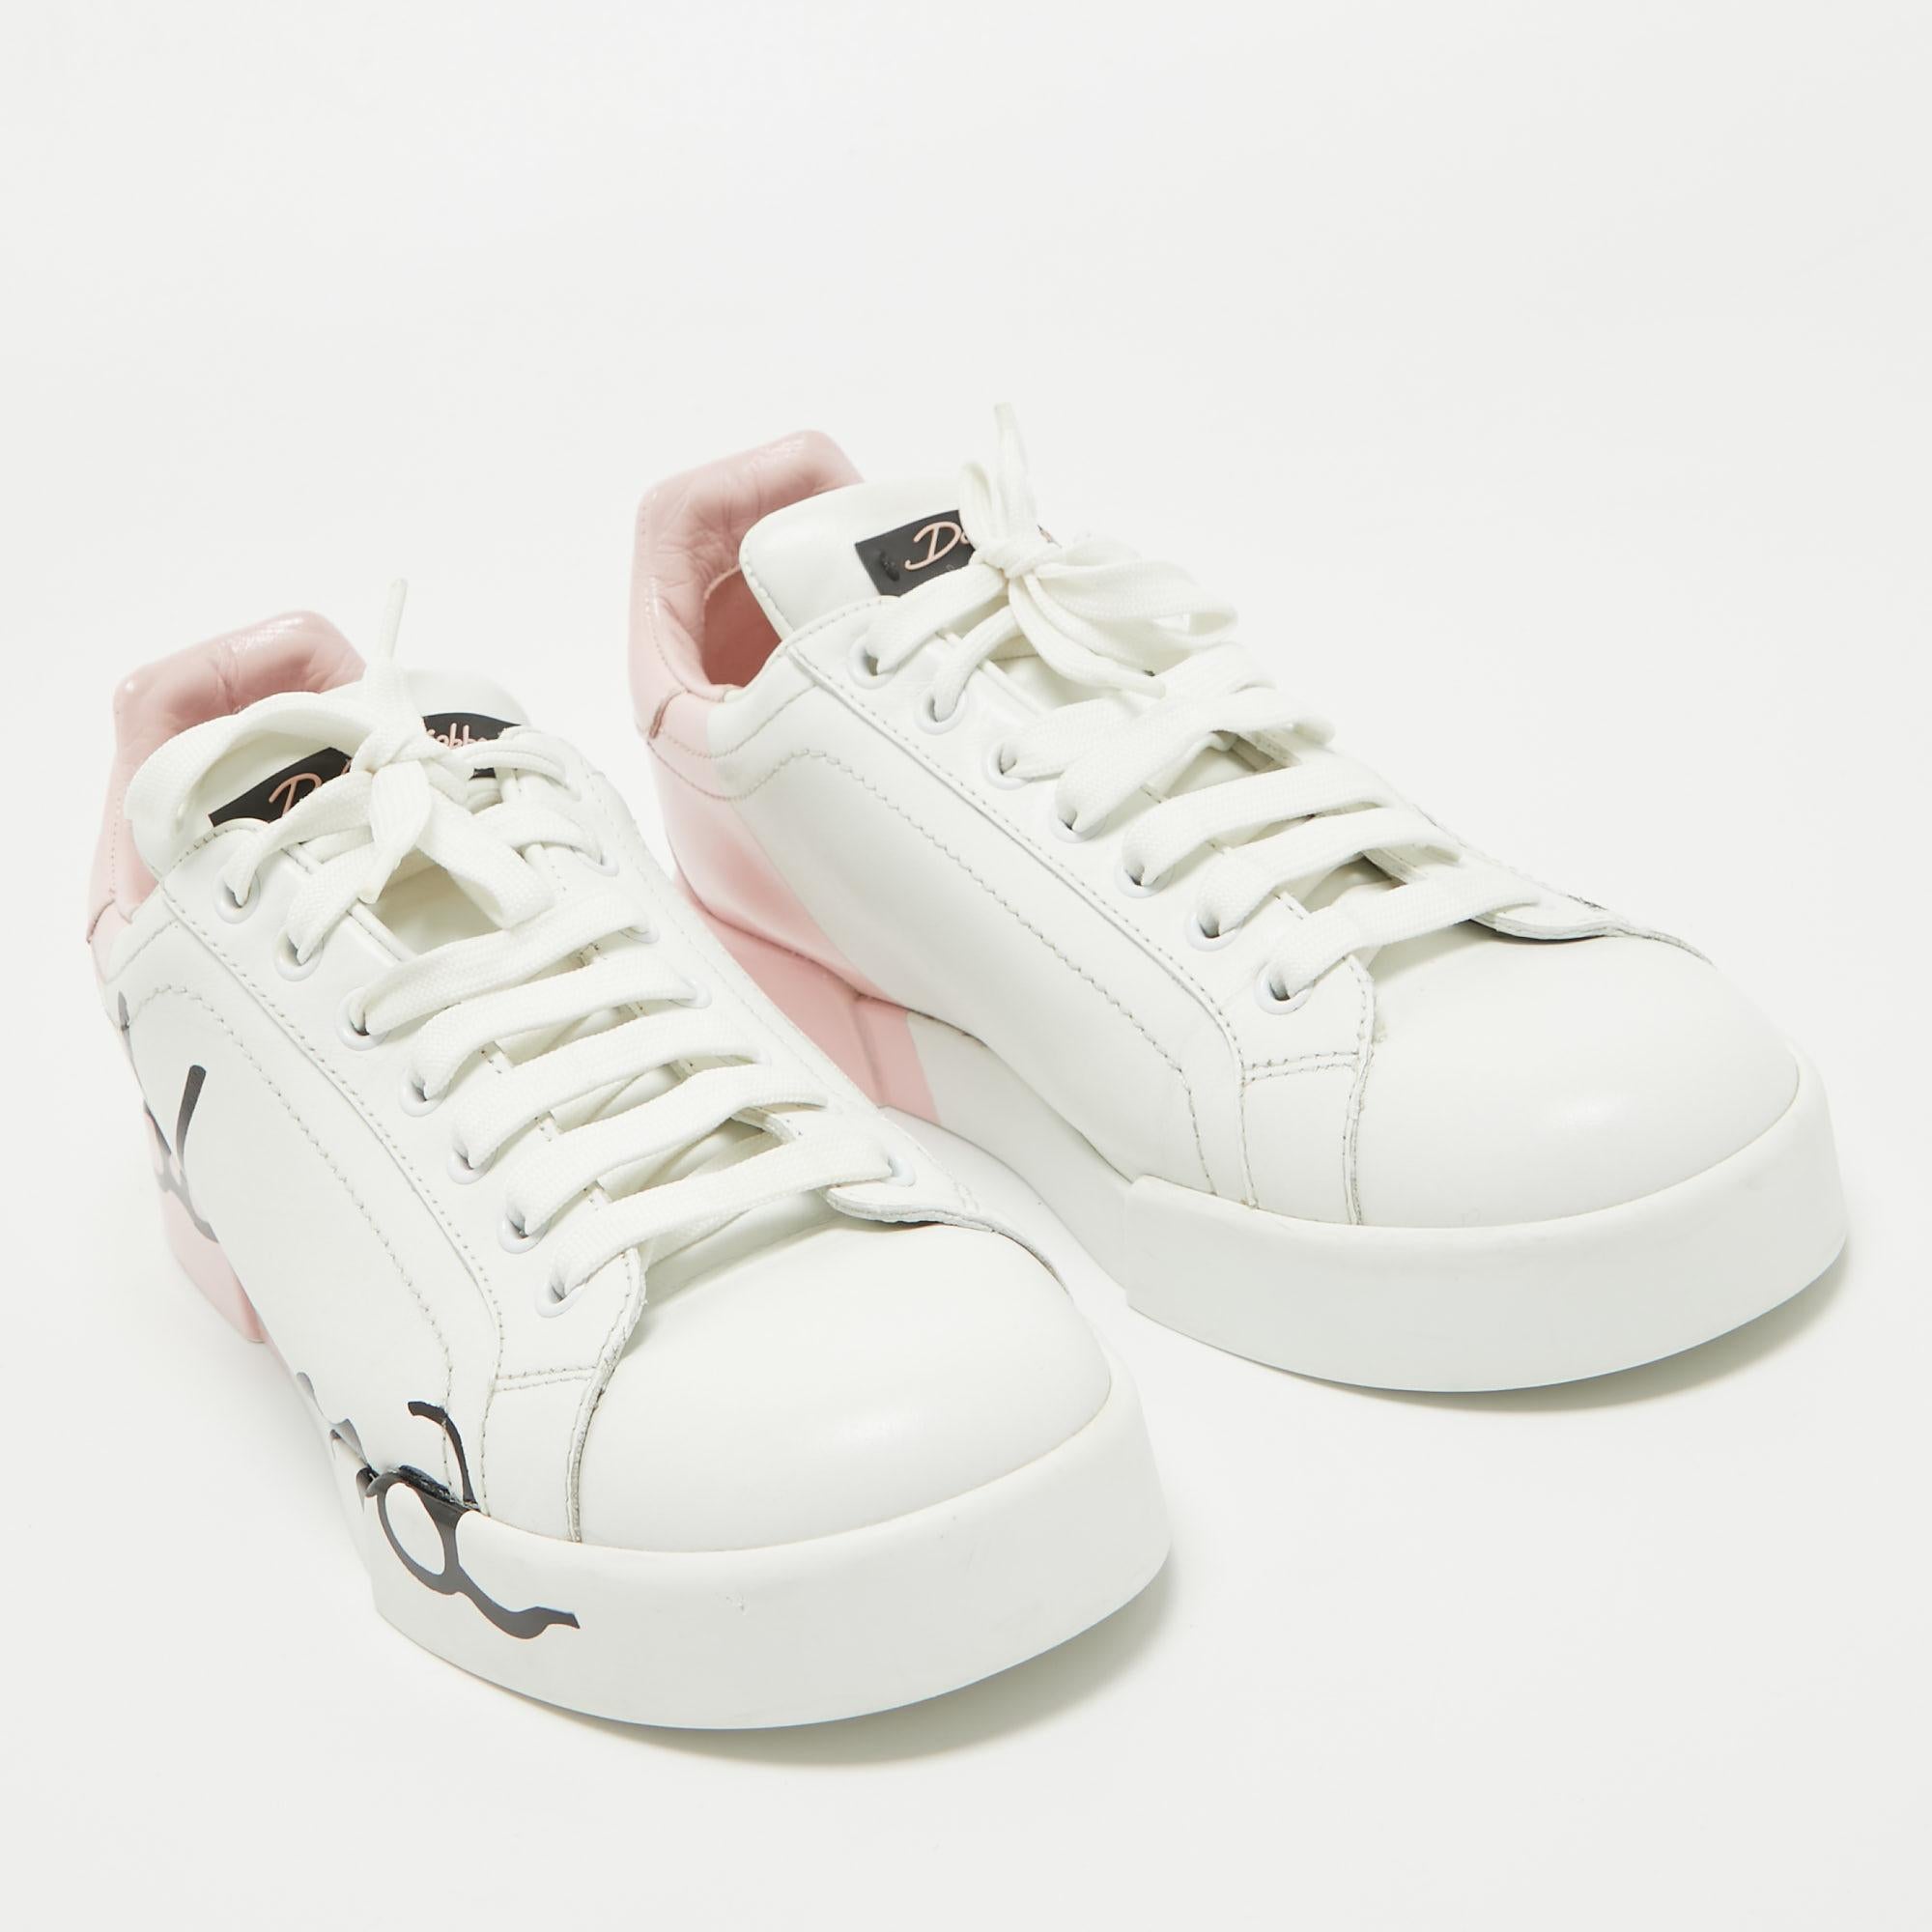 Dolce & Gabbana White/Mauve Leather Portofino Low Top Sneakers Size 39 1